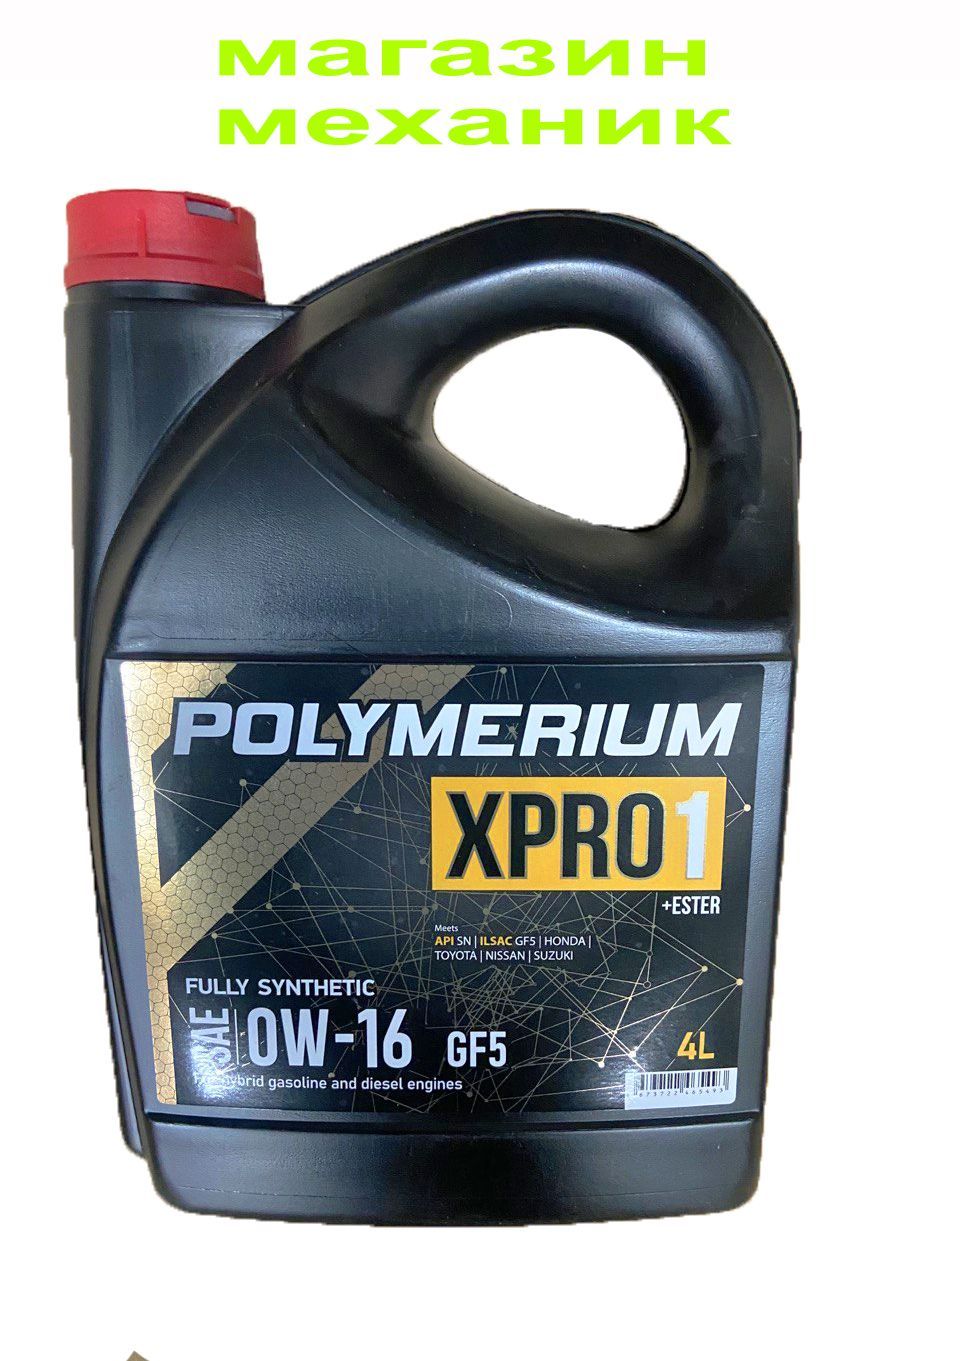 Моторное масло полимериум отзывы. Масло полимериум. Polymerium xpro2 5w-20 gf5 SN. Масло полимериум отзывы.